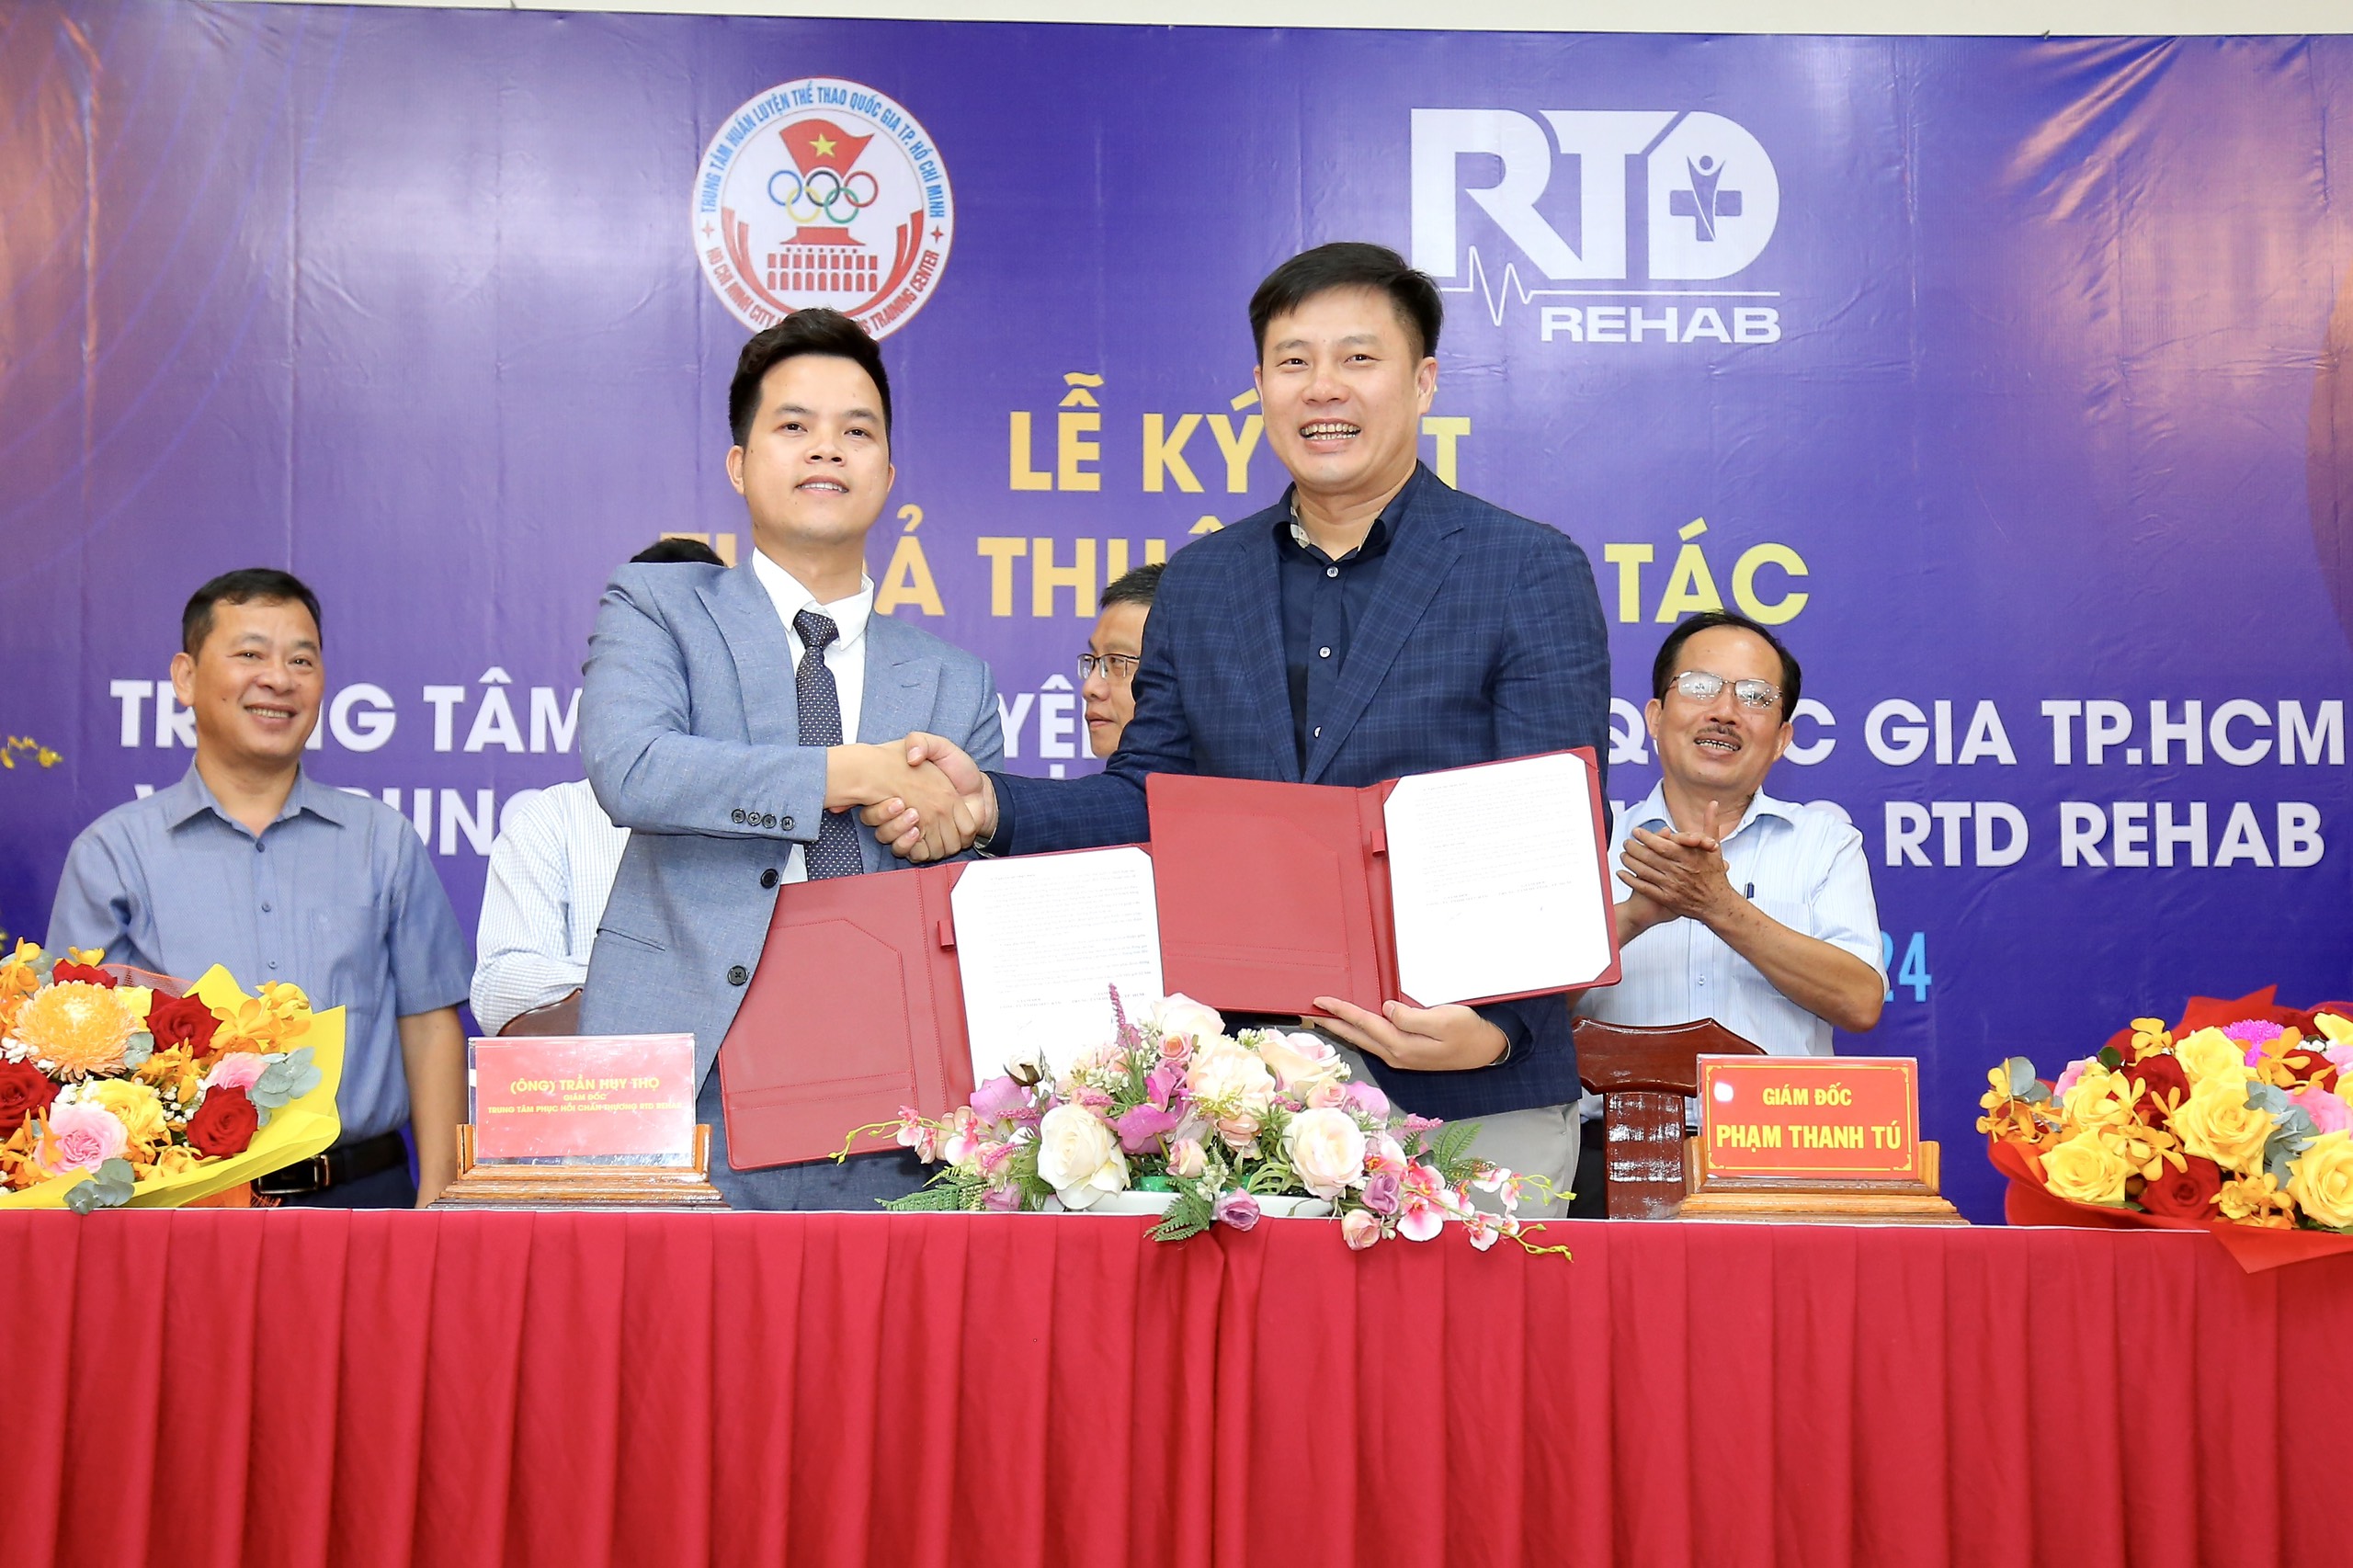 Giám đốc TTHL TTQG TP.HCM Phạm Thanh Tú hoàn tất ký kết với CEO & Founder RTD REHAB Trần Huy Thọ